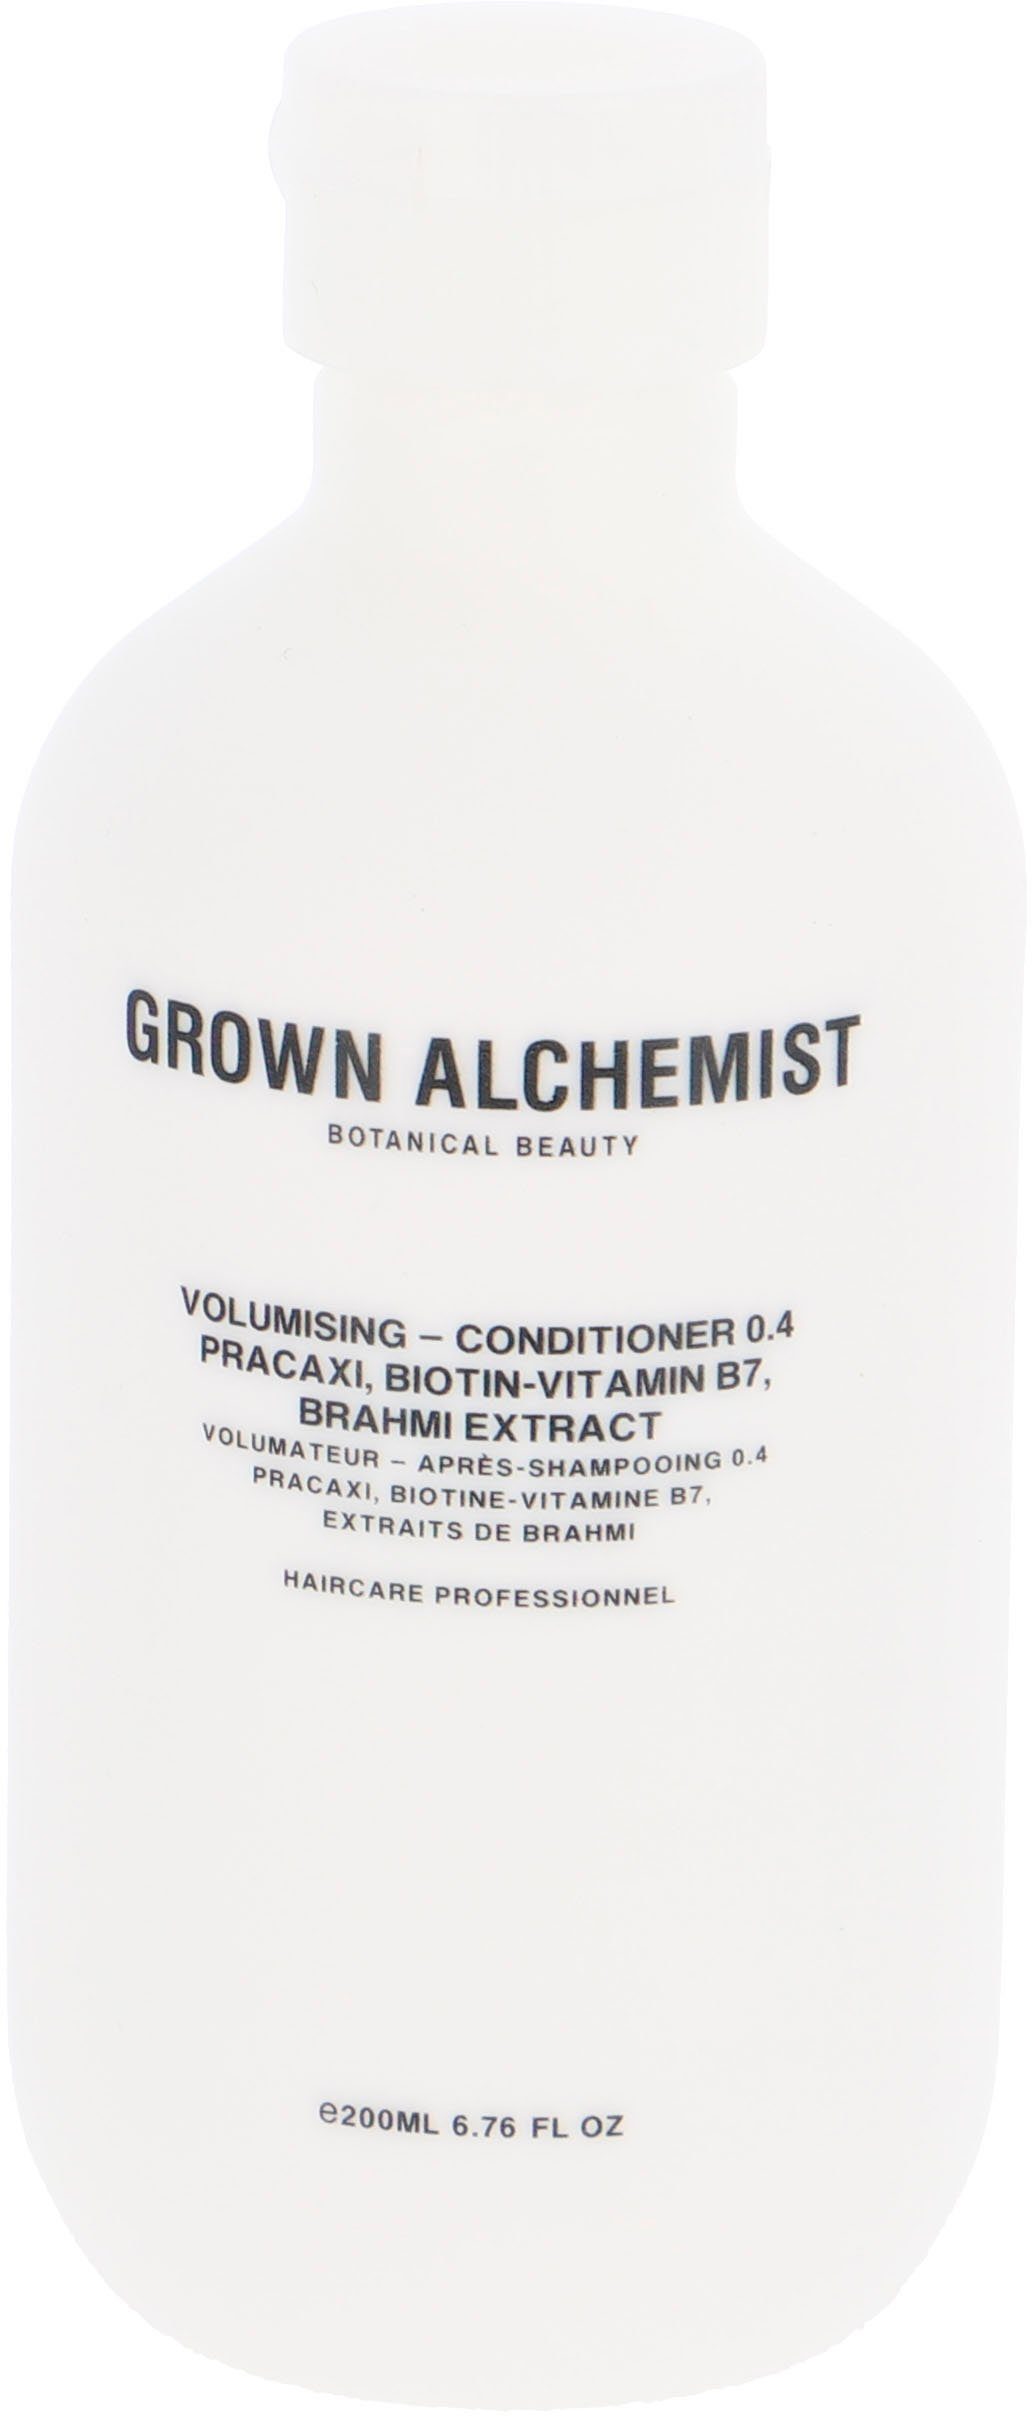 GROWN ALCHEMIST Haarspülung Volumising Brahmi 0.4, B7, Pracaxi, Conditioner - Biotin-Vitamin Extract